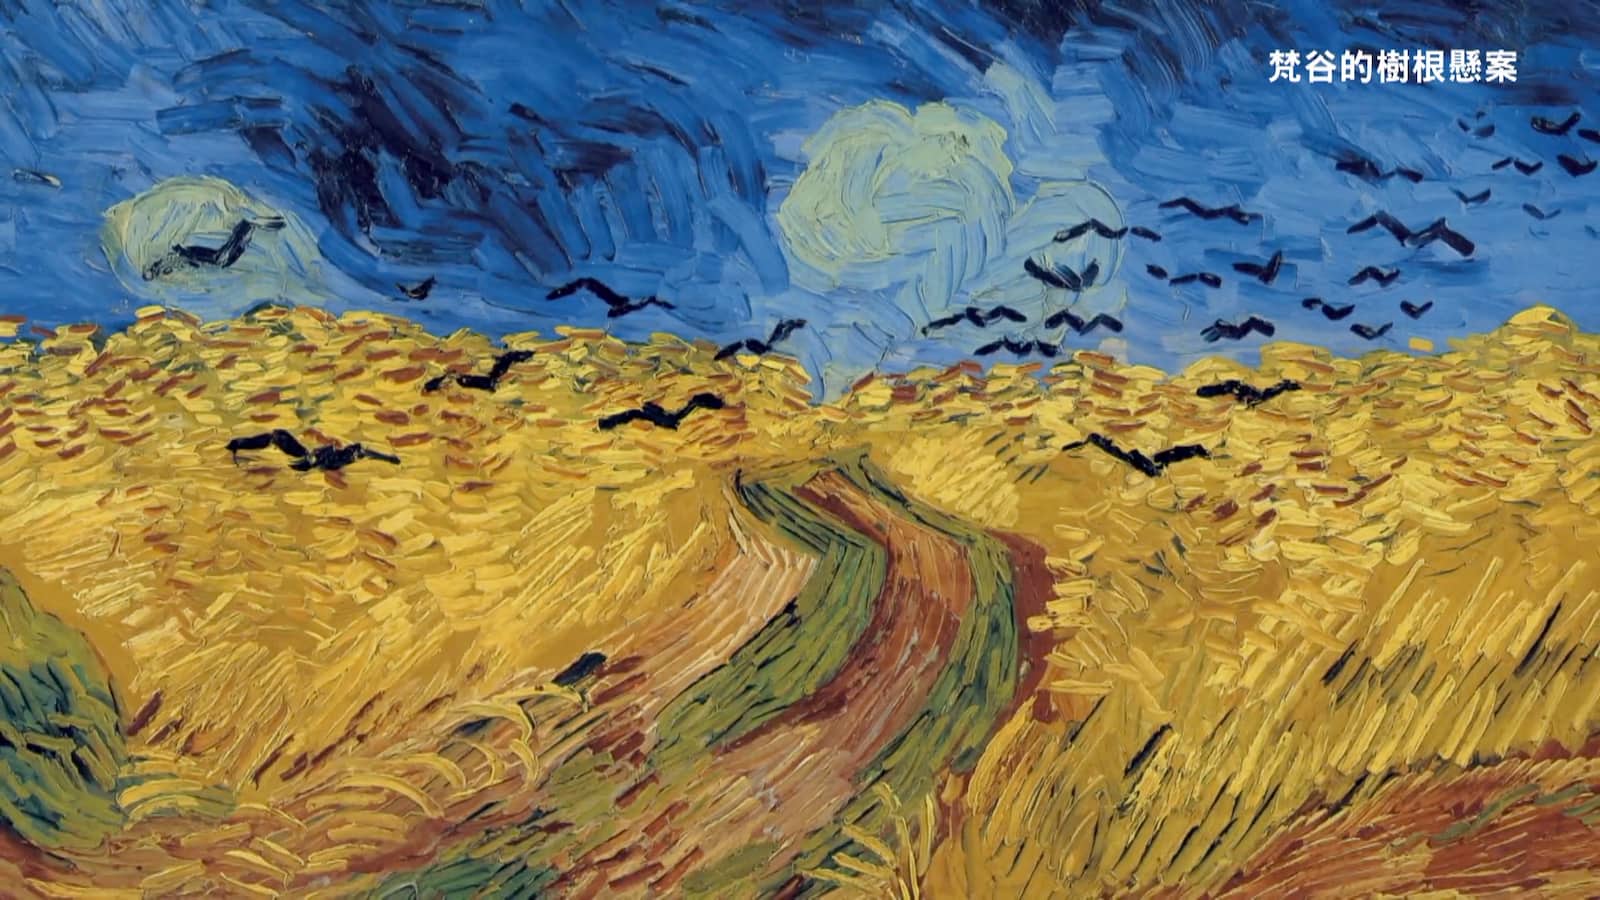 梵谷的藝術作品《麥田群鴉》（Wheat Field with Crows），或譯麥田裡的烏鴉、有烏鴉的麥田、烏鴉群飛的麥田、麥田裡的烏鴉，是荷蘭後印象派畫家文生·梵谷創作於1890年7月的一幅油畫。劇照／《梵谷的樹根懸案》
